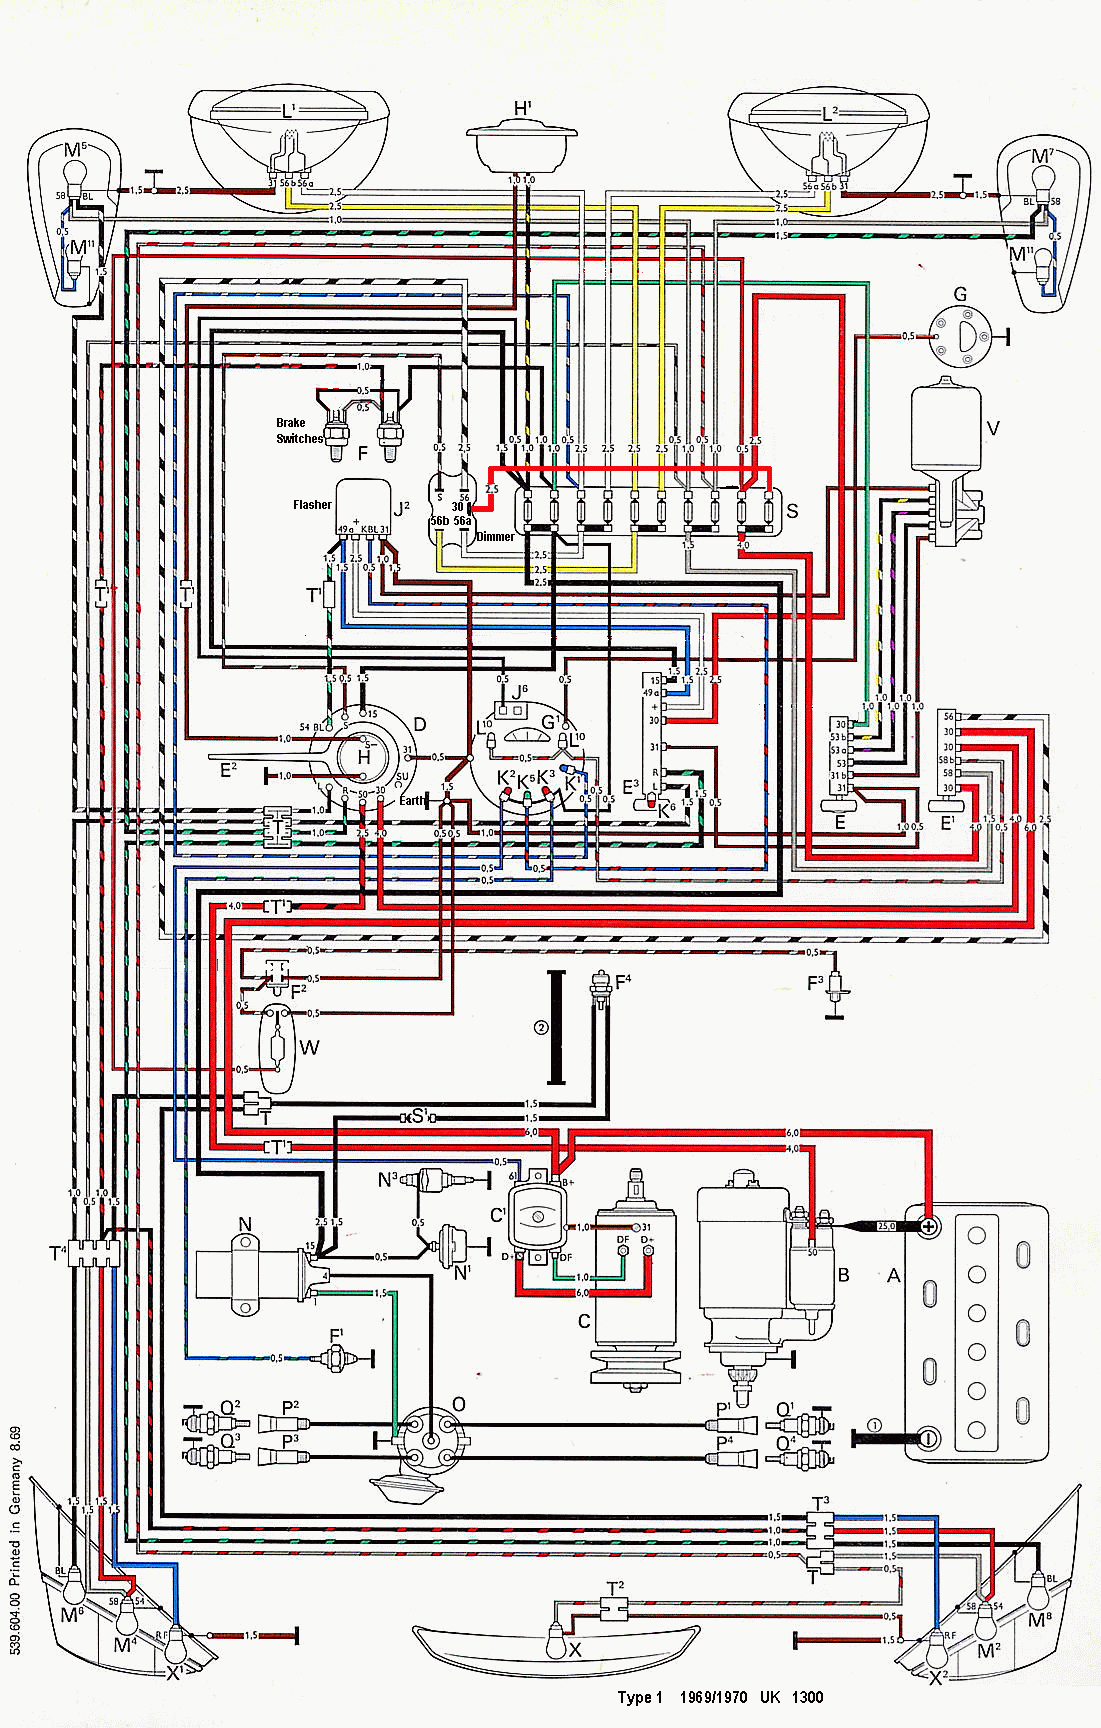 1969 1300 Beetle Wiring Diagram - Page 2 - VW Forum - VZi ... 1969 vw squareback wiring diagram 